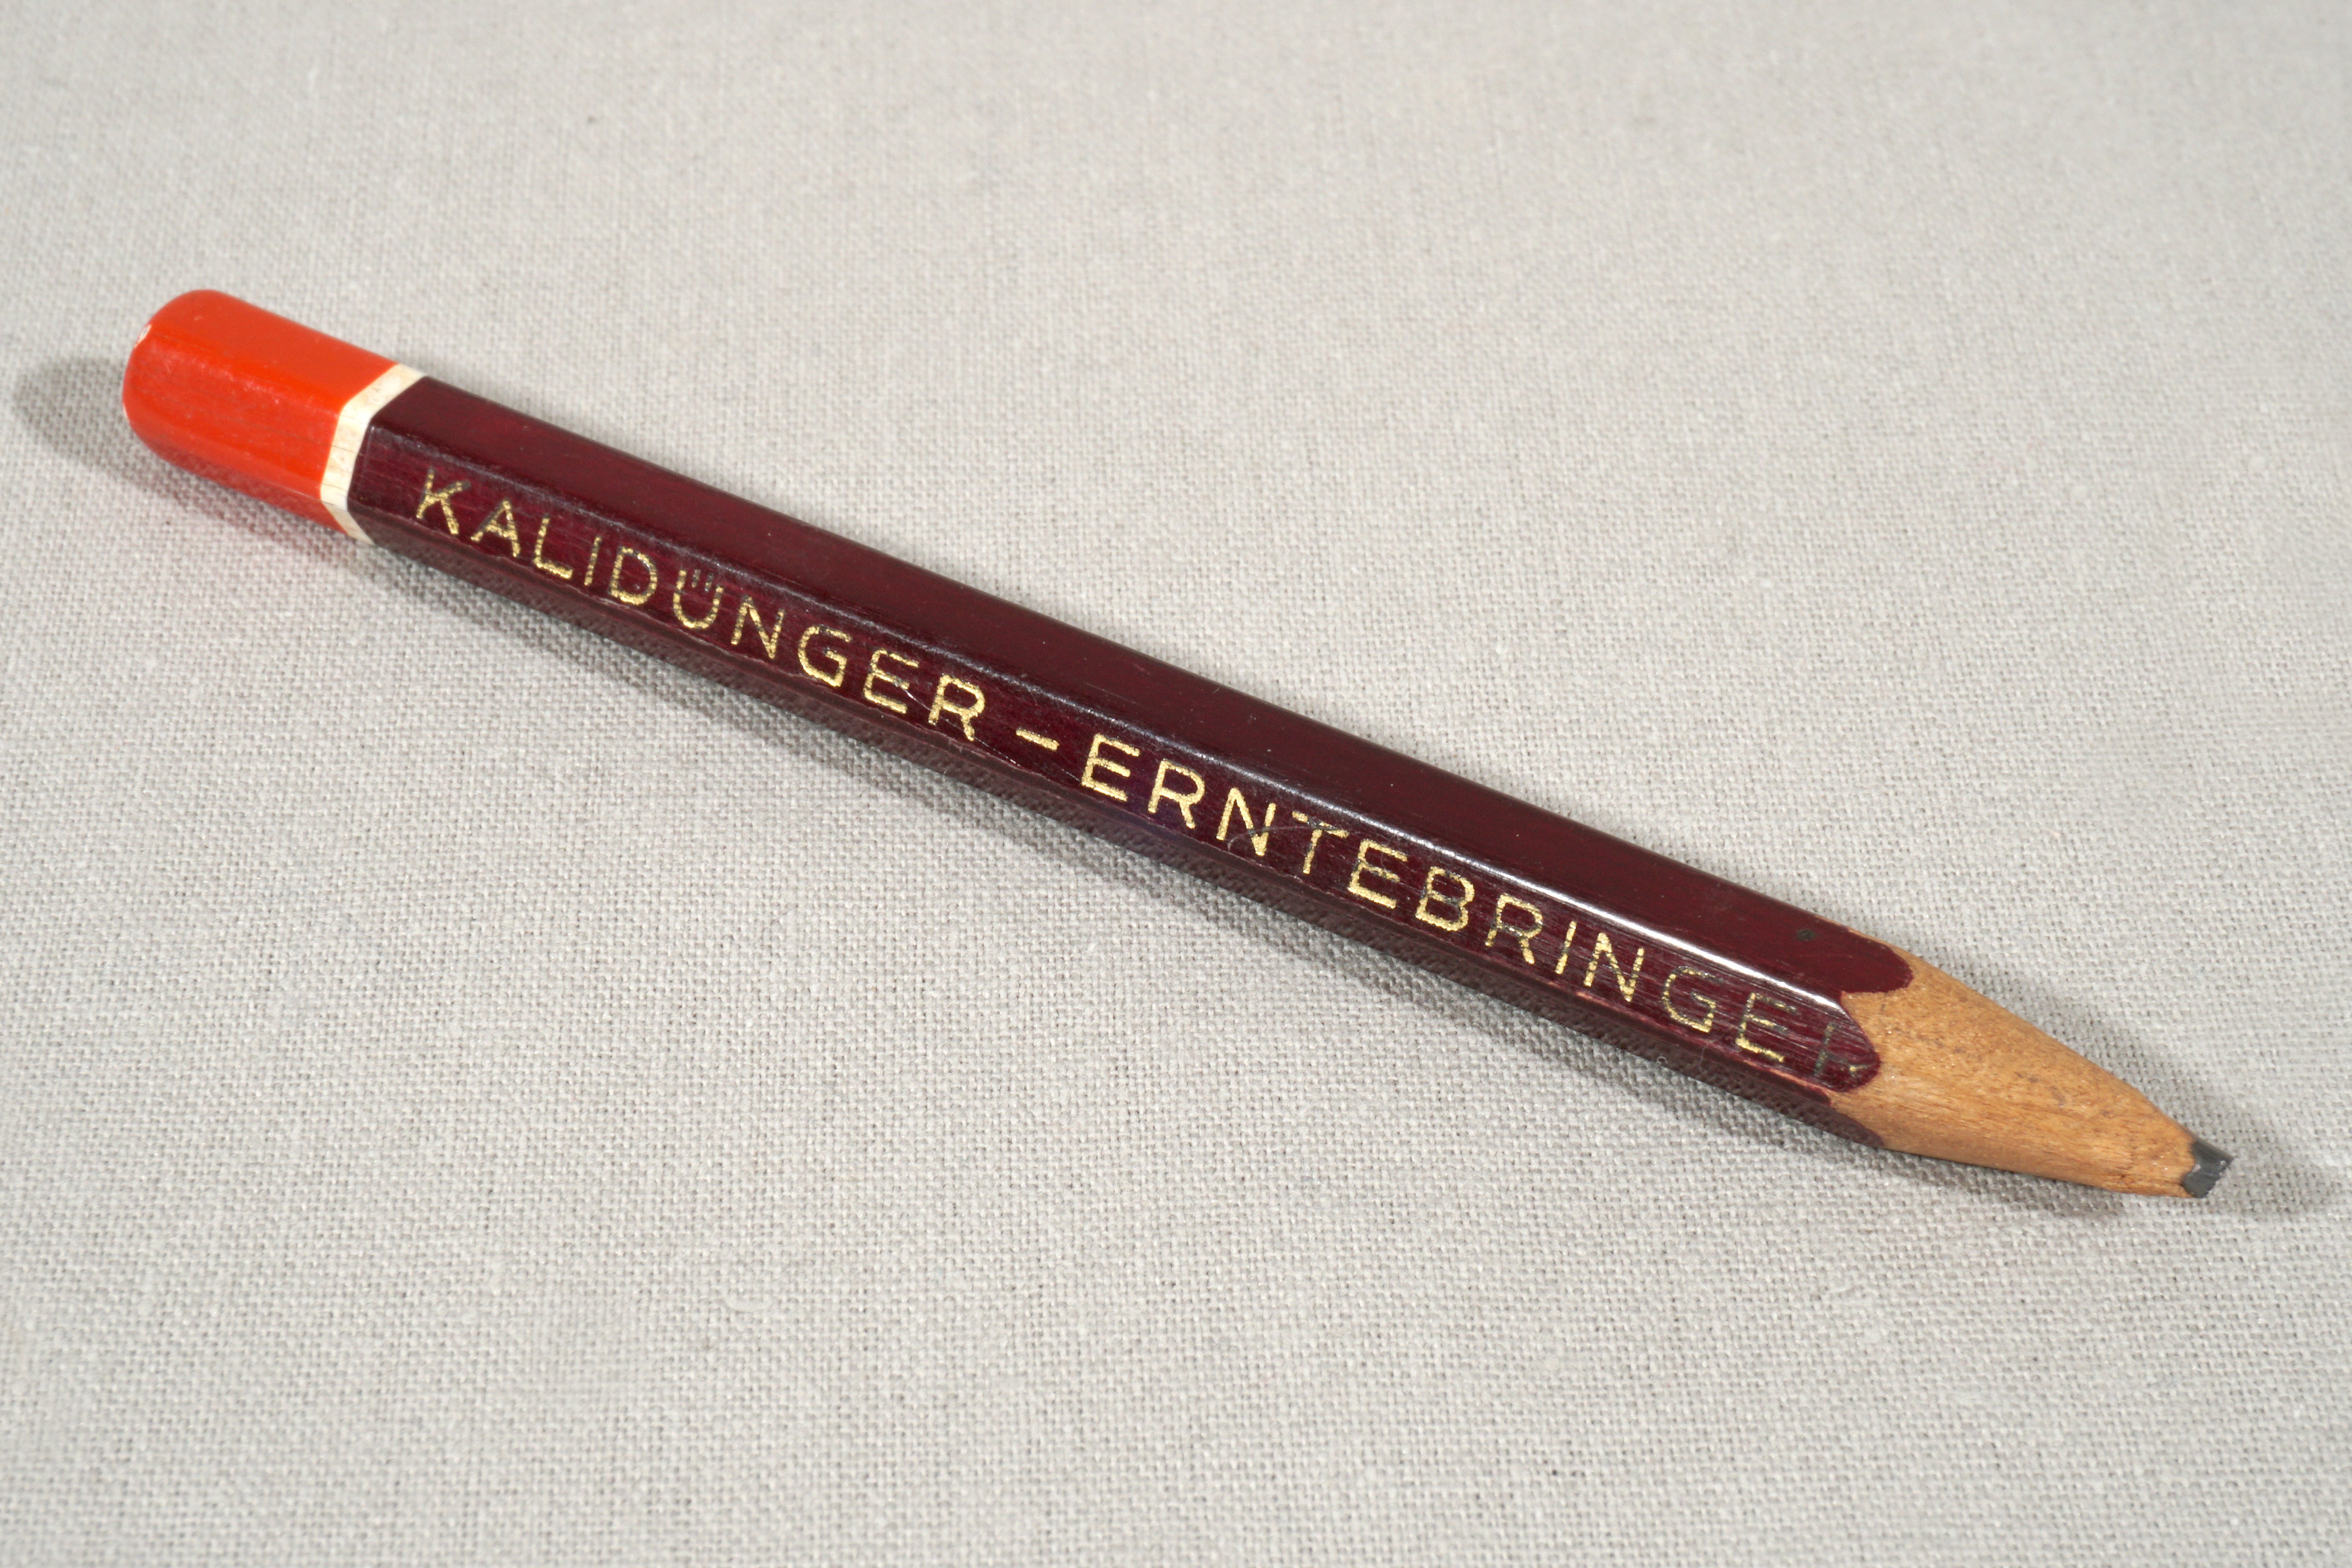 Bleistift mit Werbeaufdruck 'Kalidünger Erntebringer' (Werra-Kalibergbau-Museum, Heringen/W. CC BY-NC-SA)